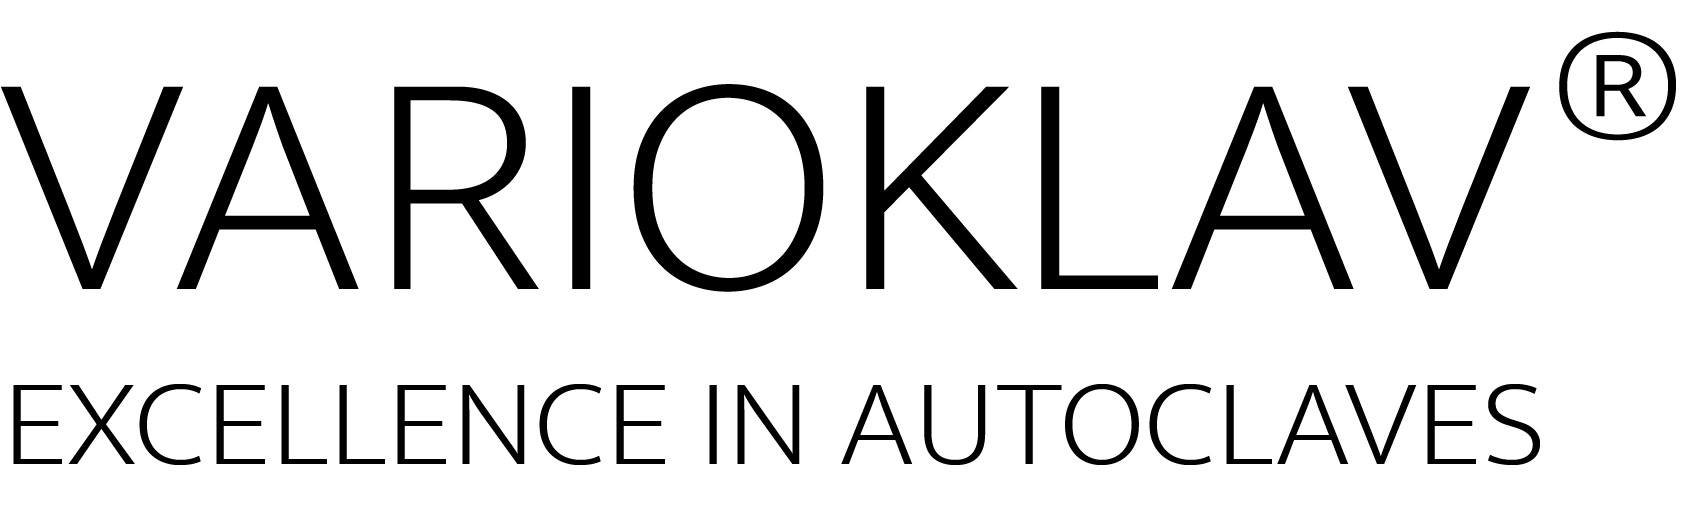 Varioklav Logo